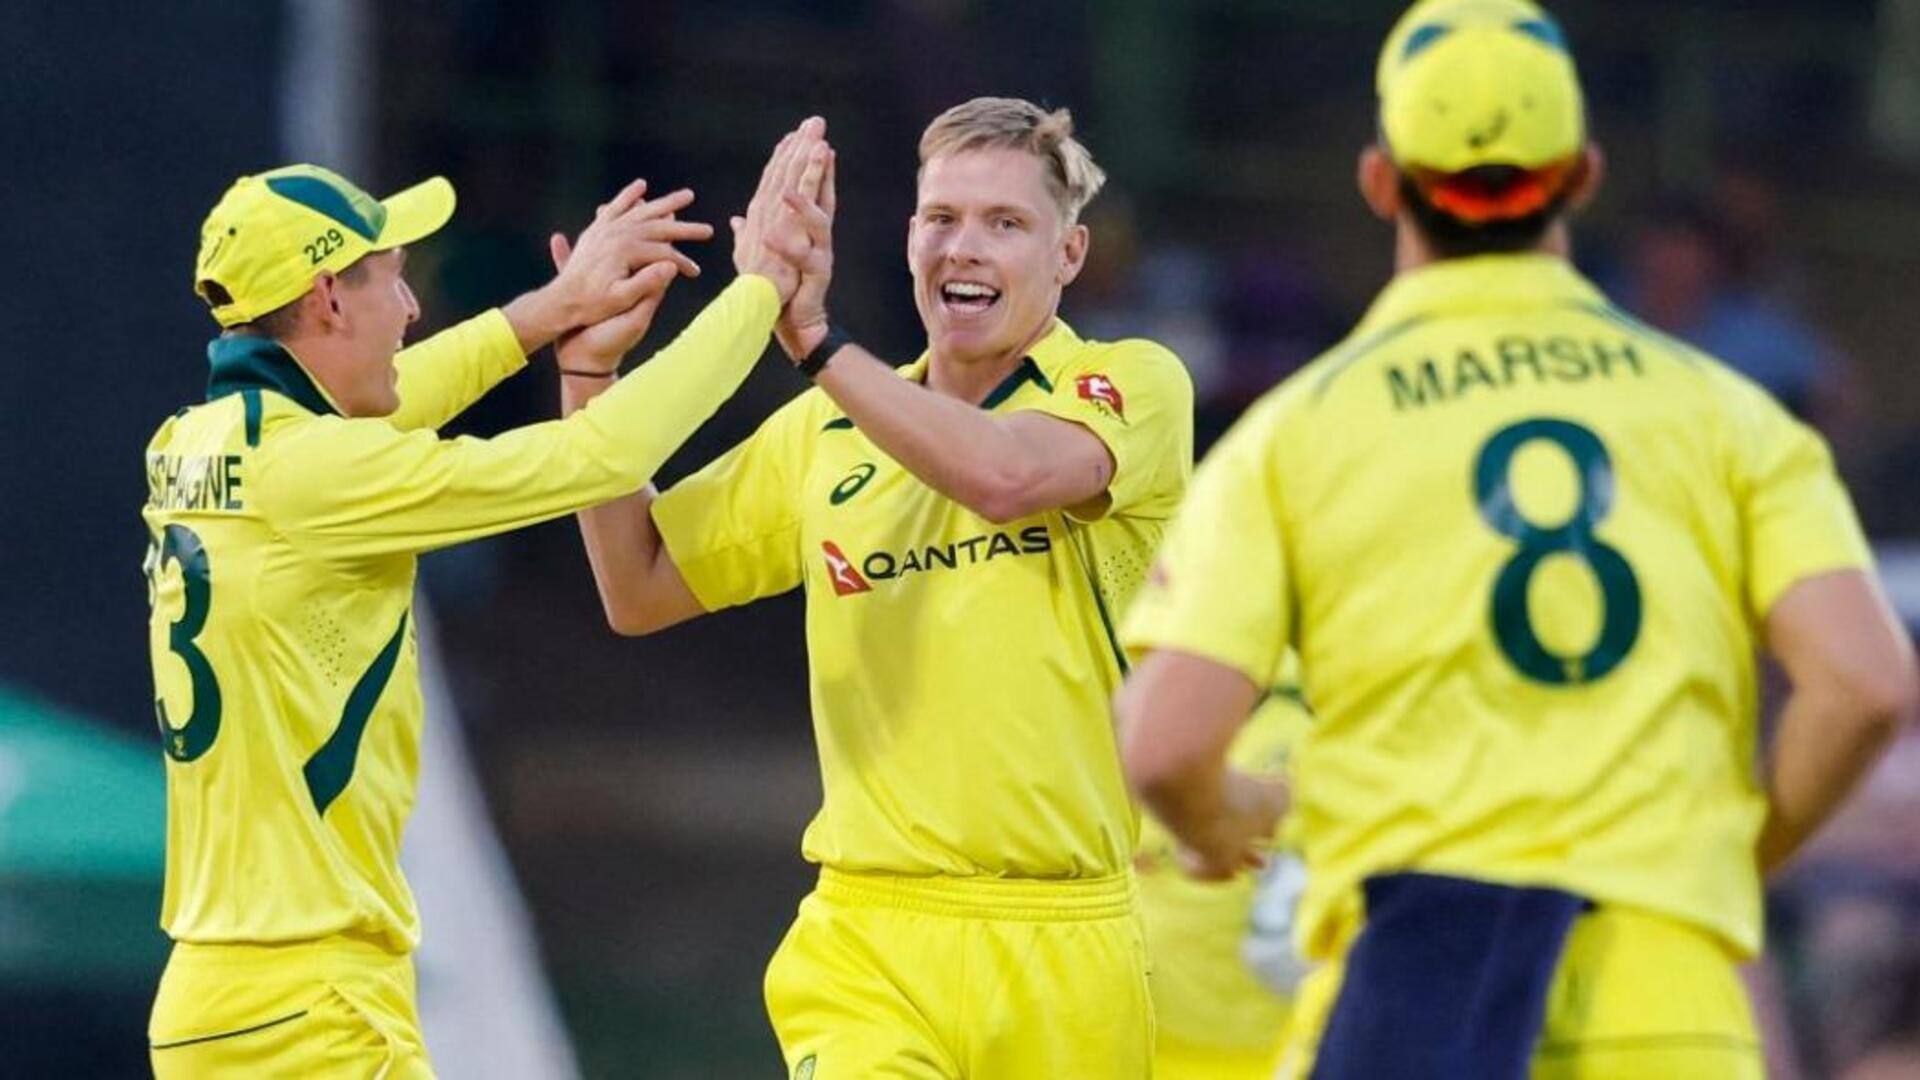 भारत के खिलाफ वनडे सीरीज के लिए ऑस्ट्रेलिया क्रिकेट टीम घोषित, कई दिग्गजों की हुई वापसी 